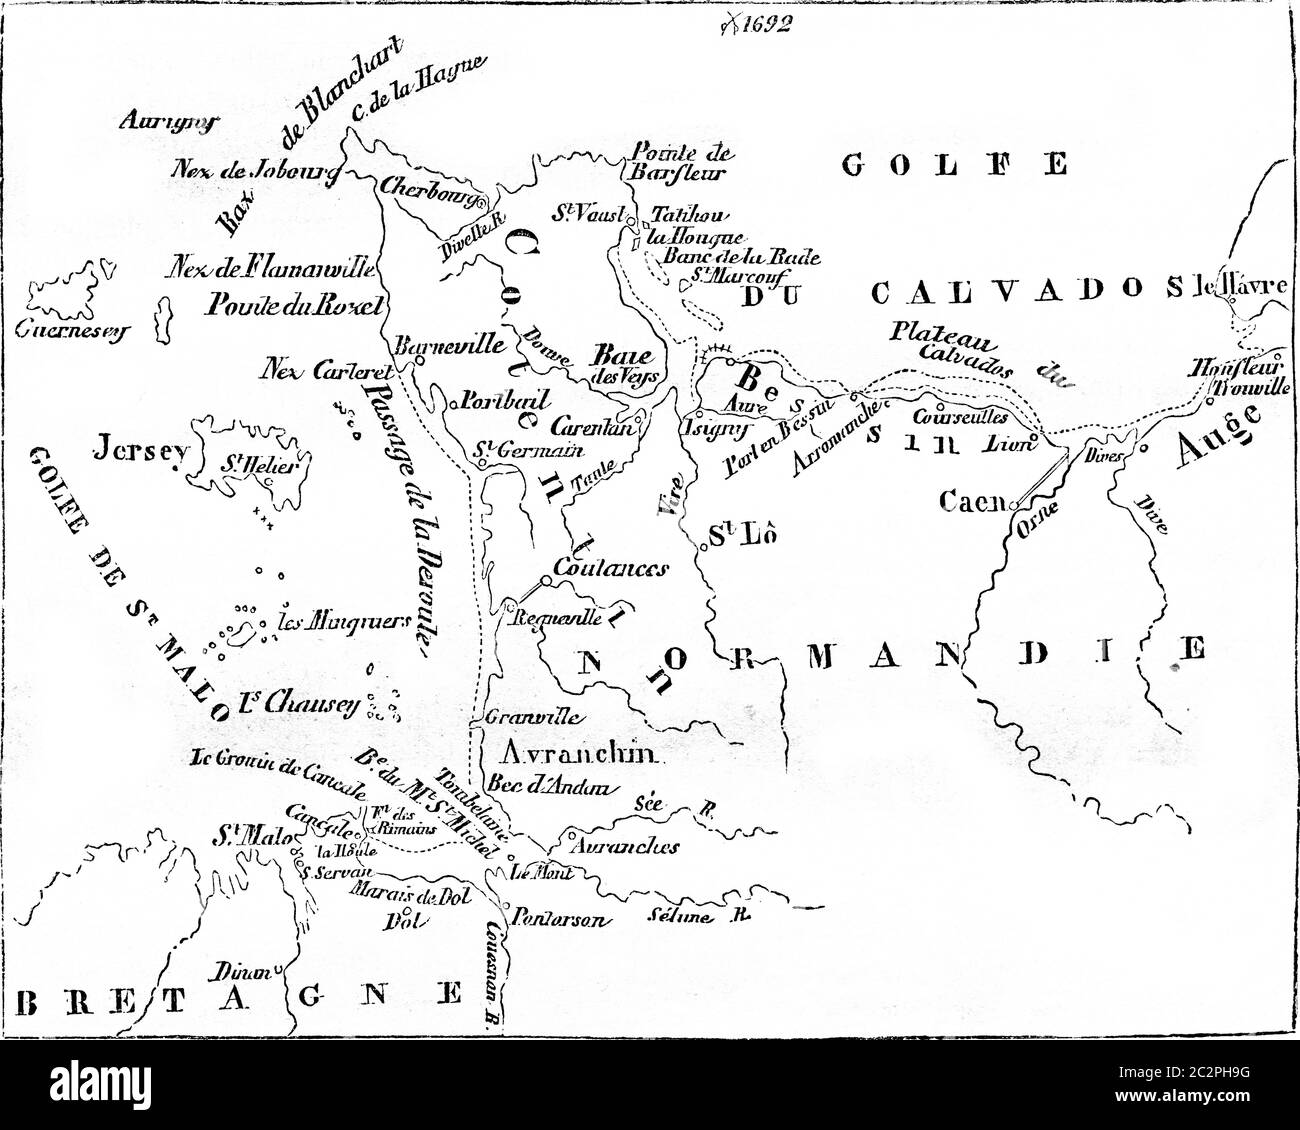 Mappa di calvados Banque d'images noir et blanc - Alamy